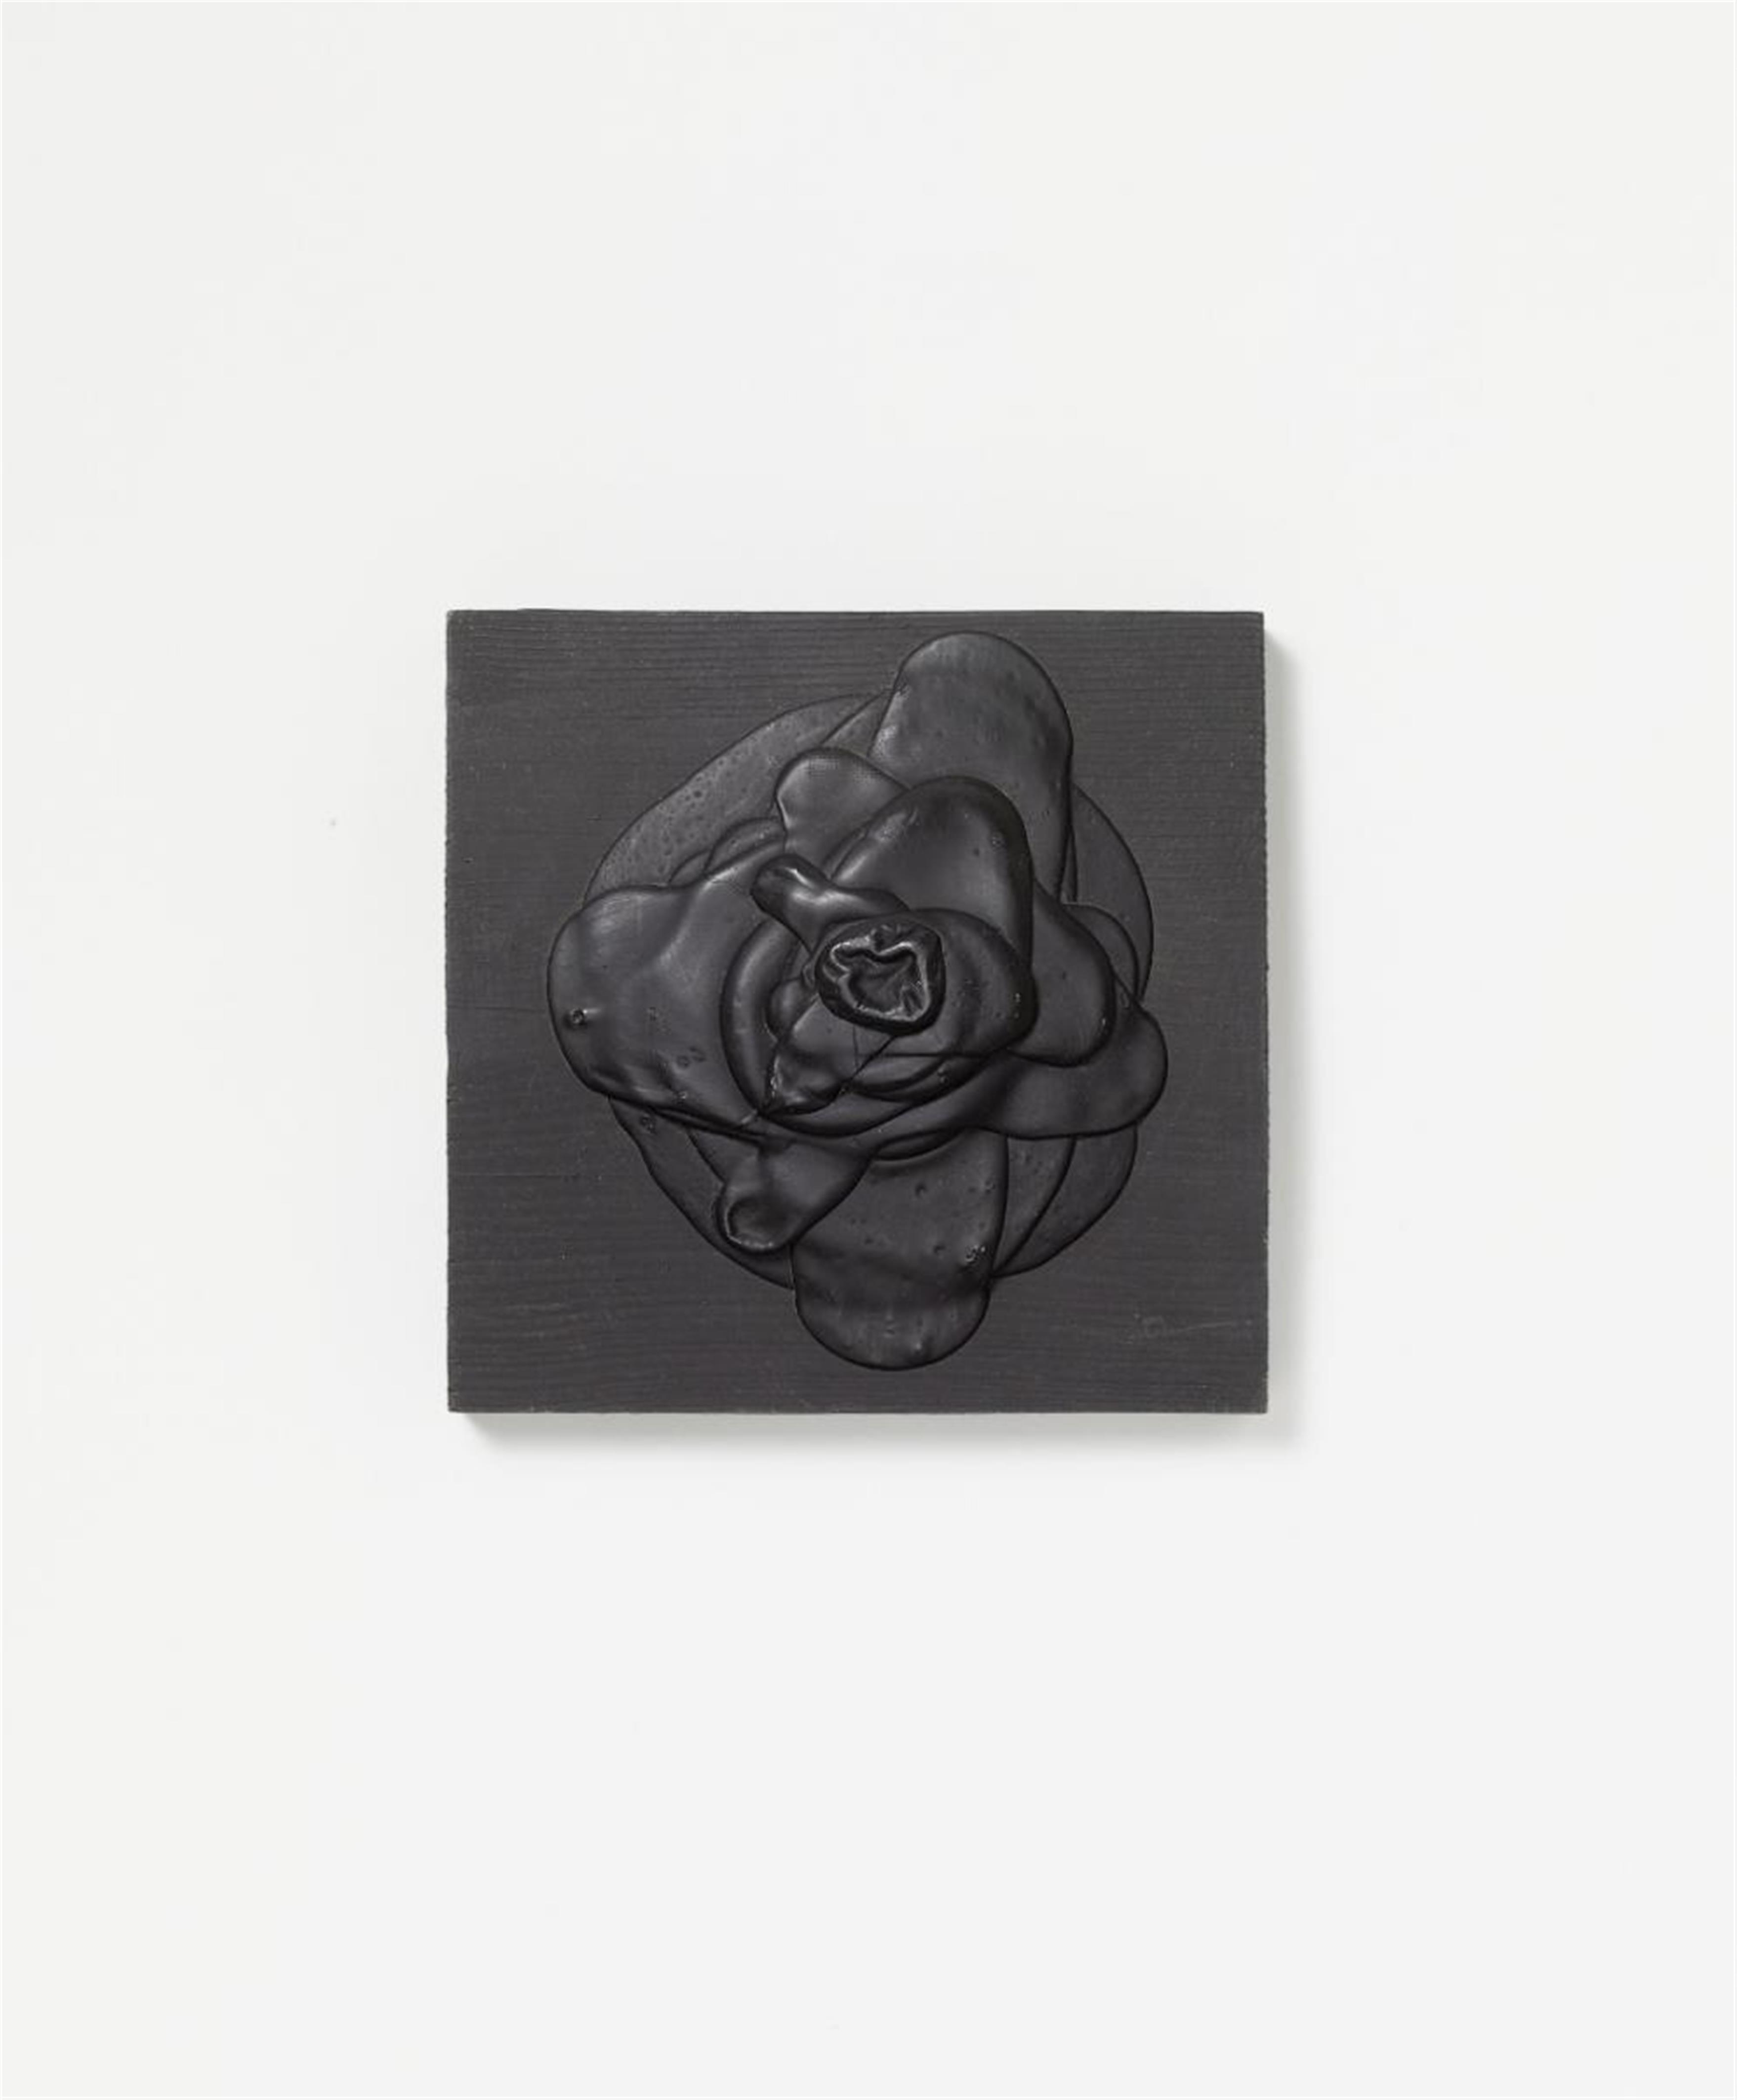 Dieter Roth - Schwarze Rose (Black rose) - image-1